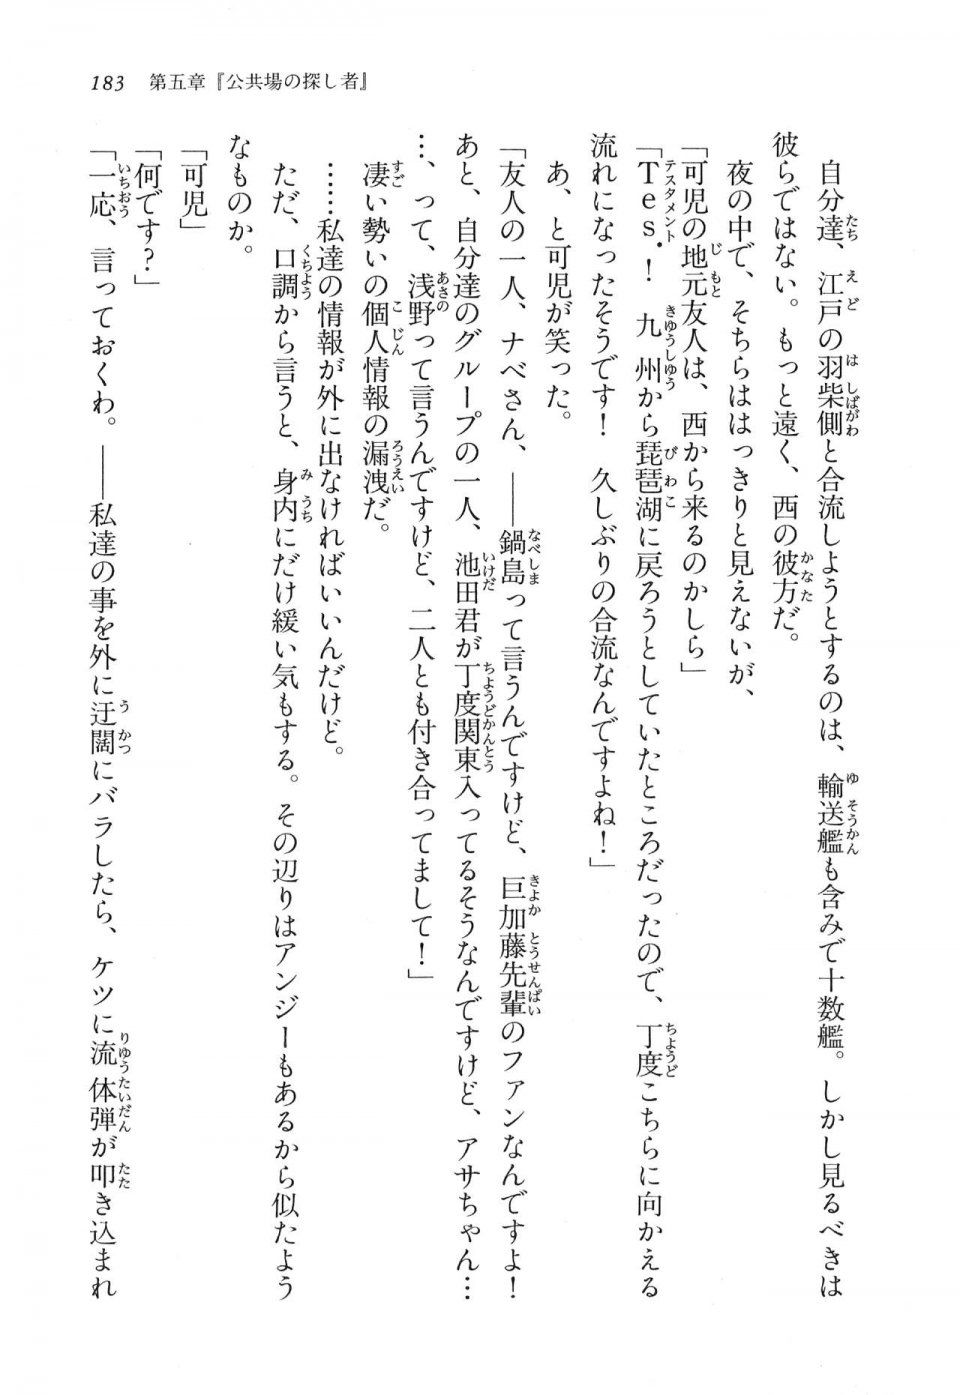 Kyoukai Senjou no Horizon LN Vol 16(7A) - Photo #183